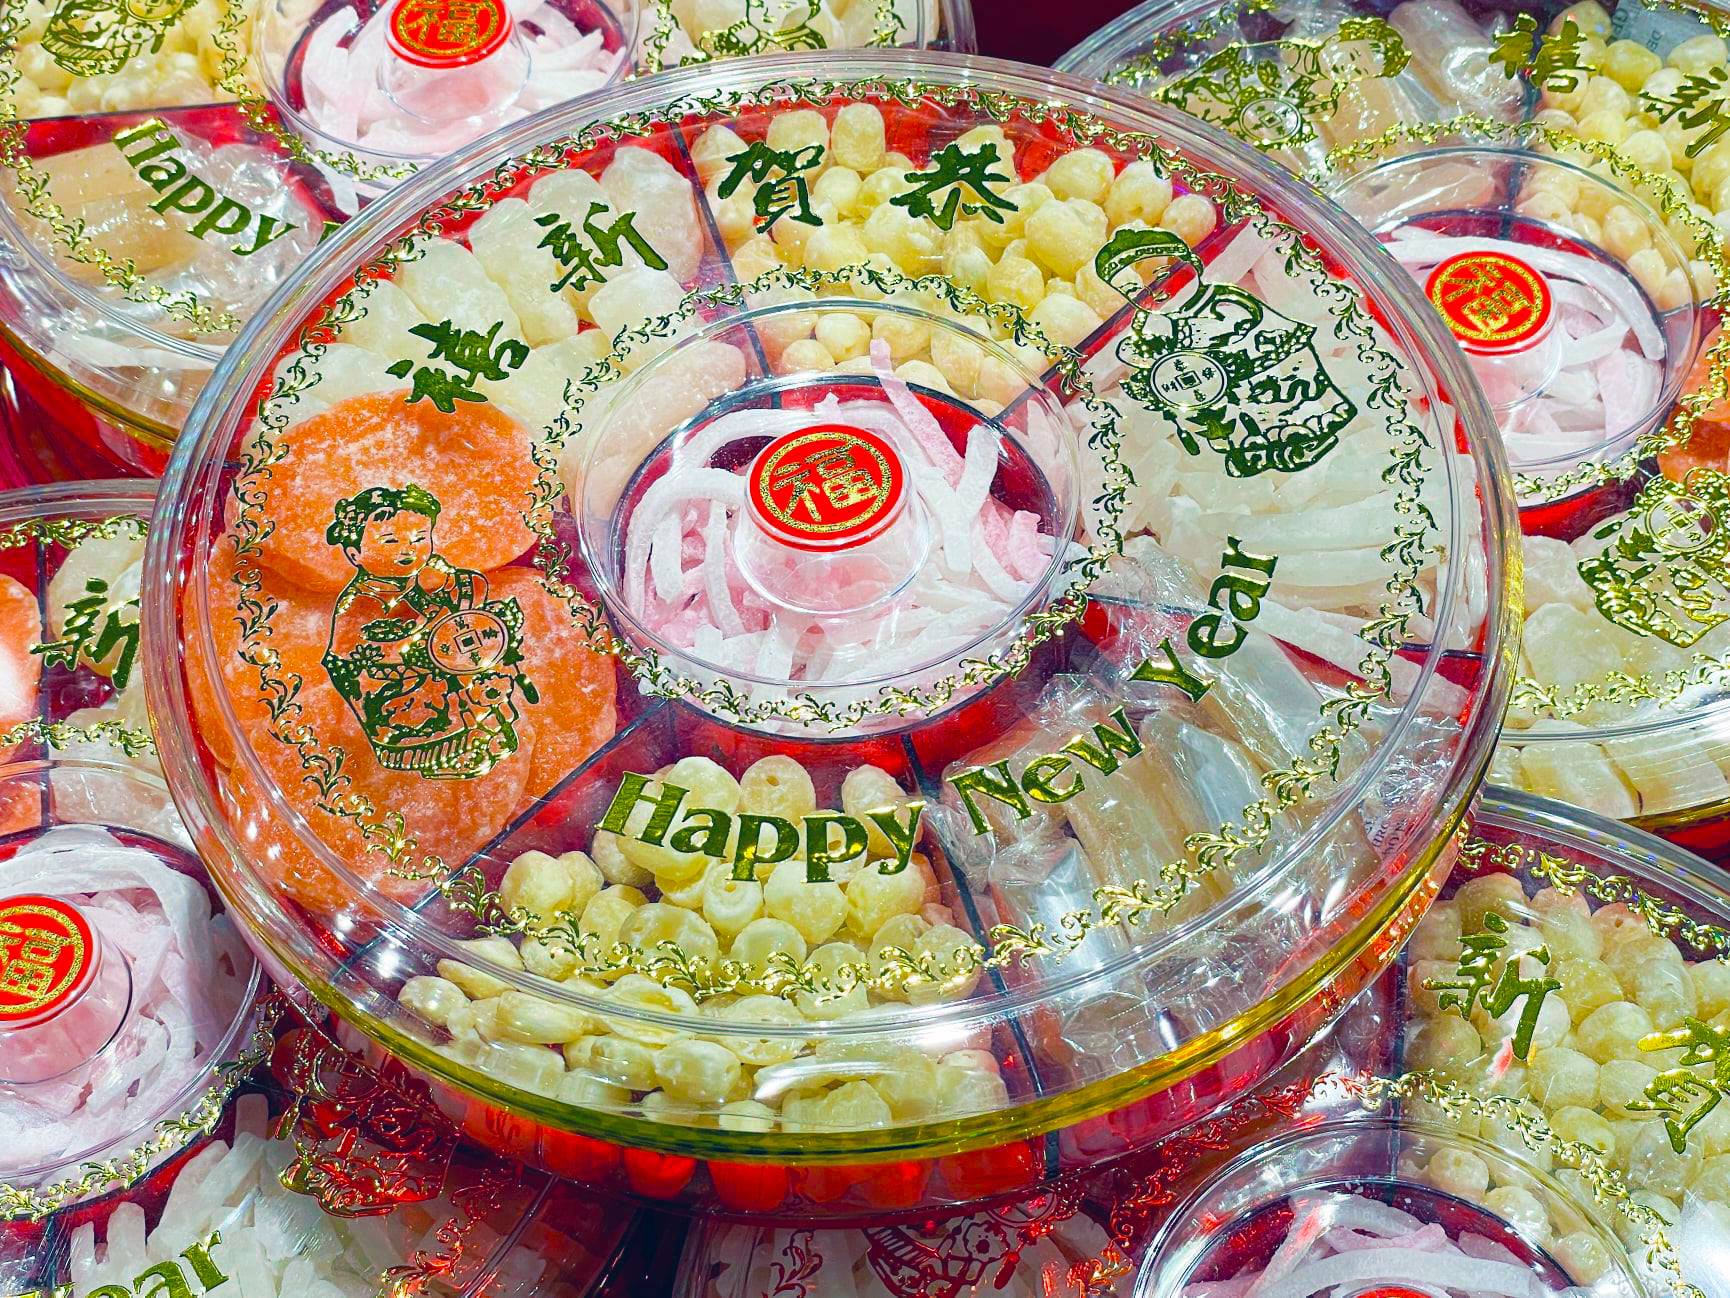 Lunar New Year Lucky Snacks - Uwajimaya